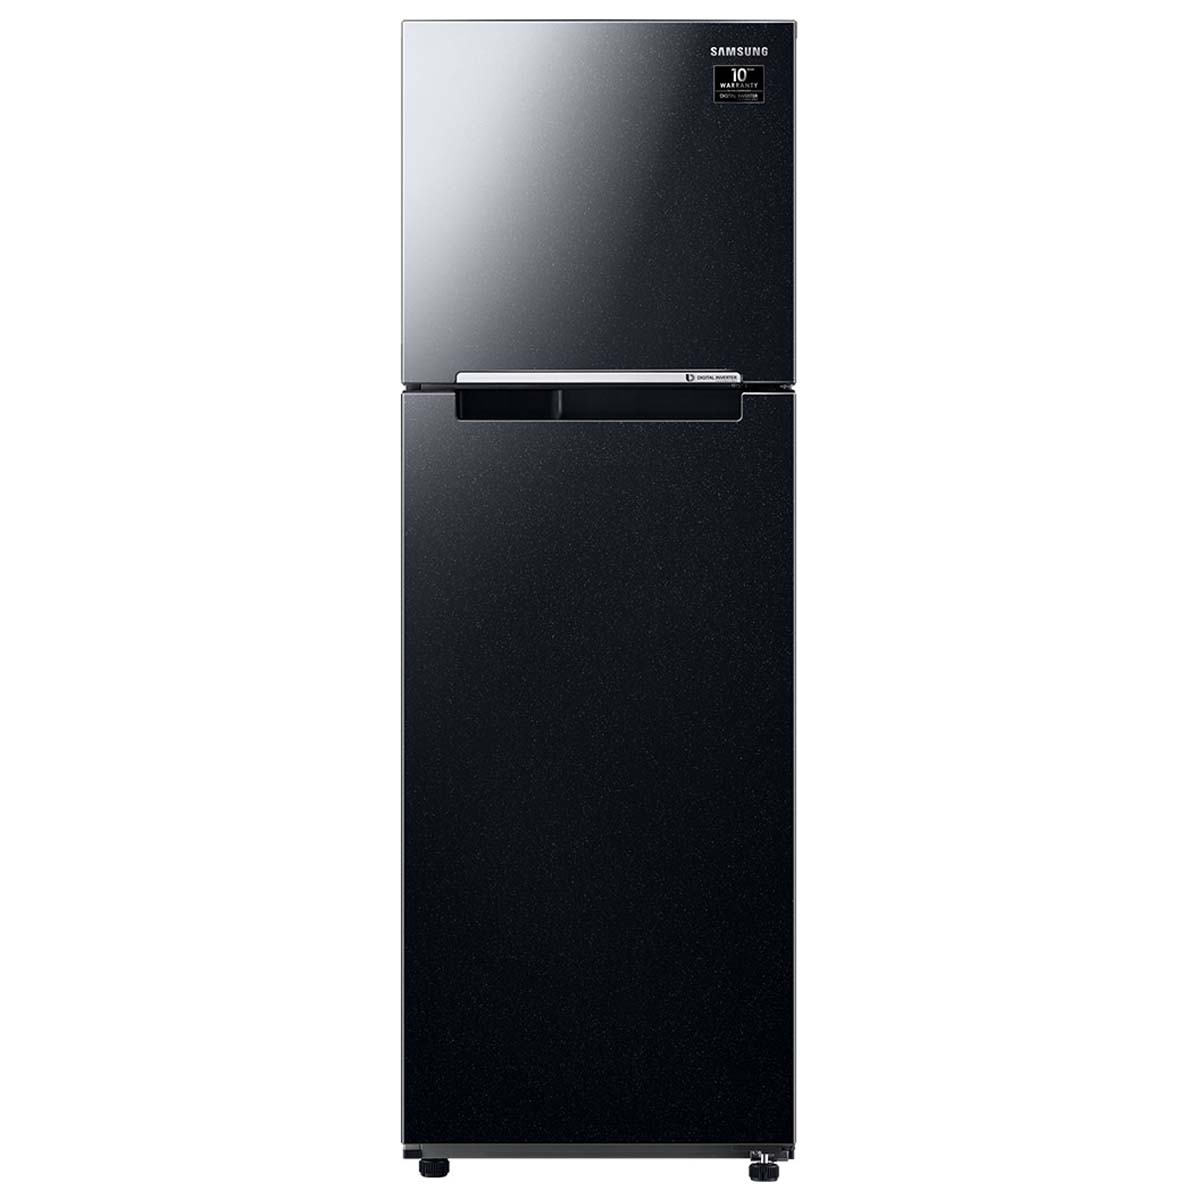 Tủ lạnh Samsung inverter 256 lít RT25M4032BU